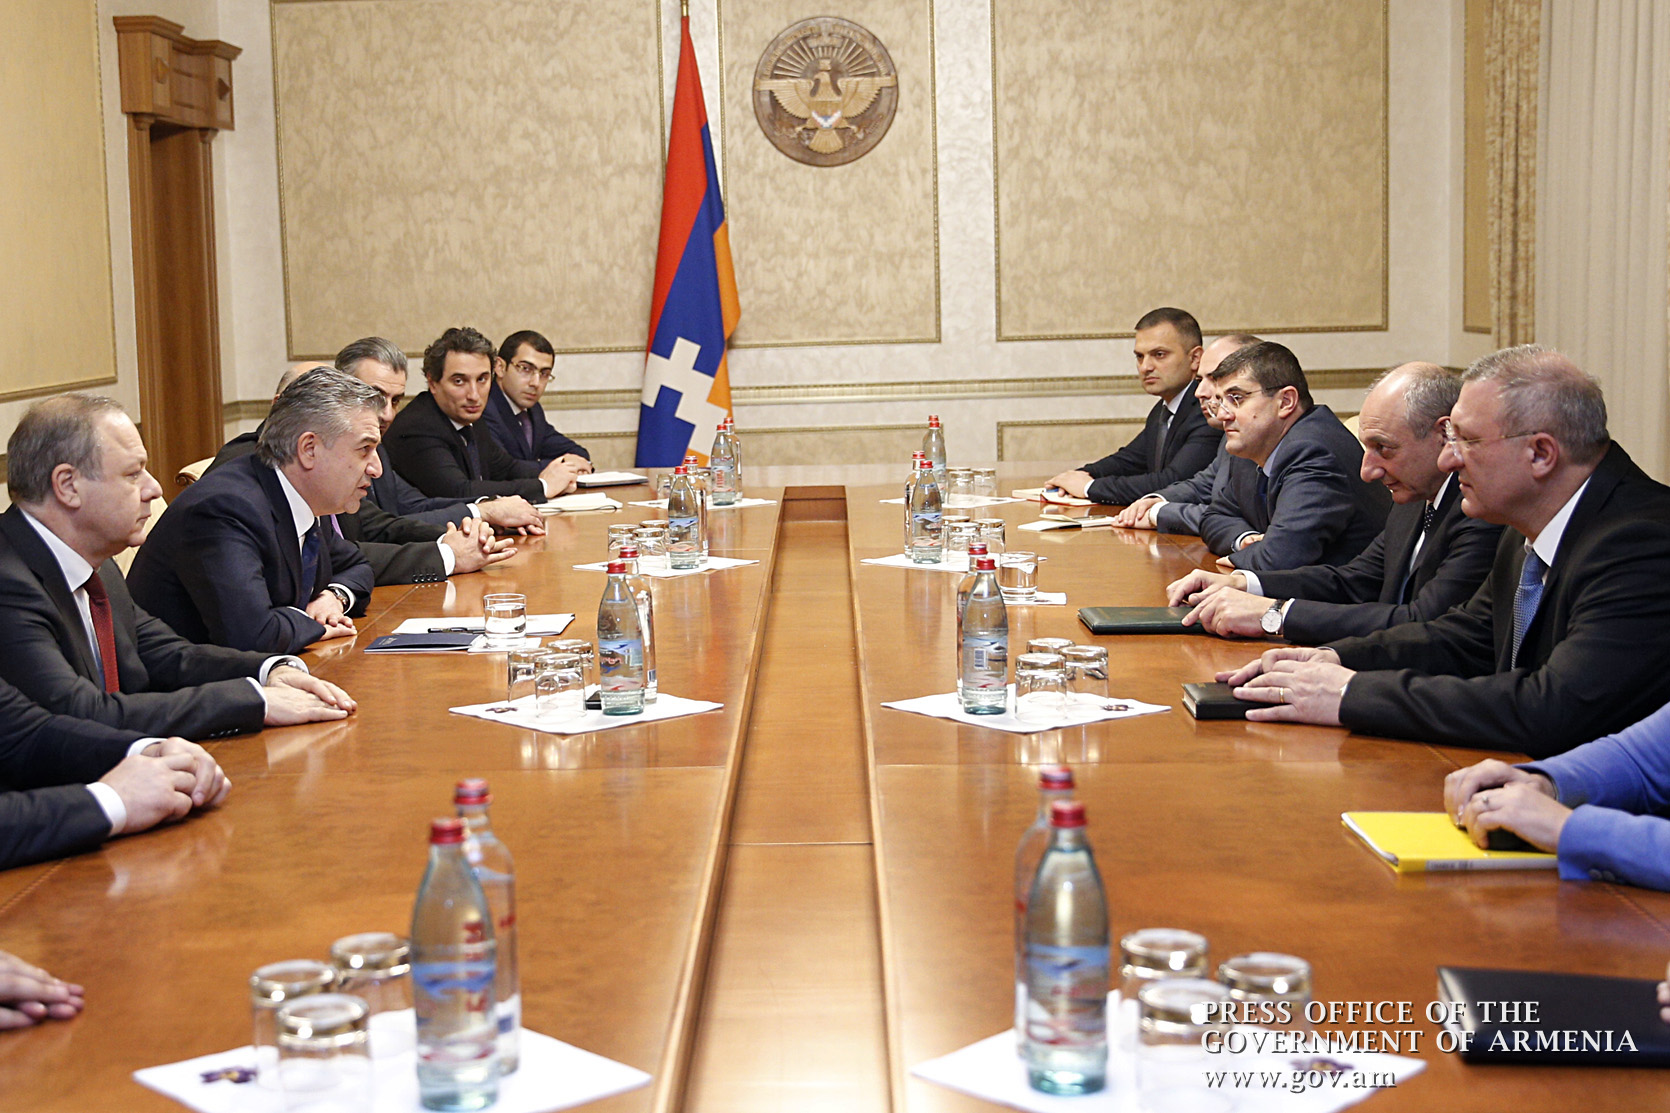 Bako Sahakyan met with Armenian Prime Minister